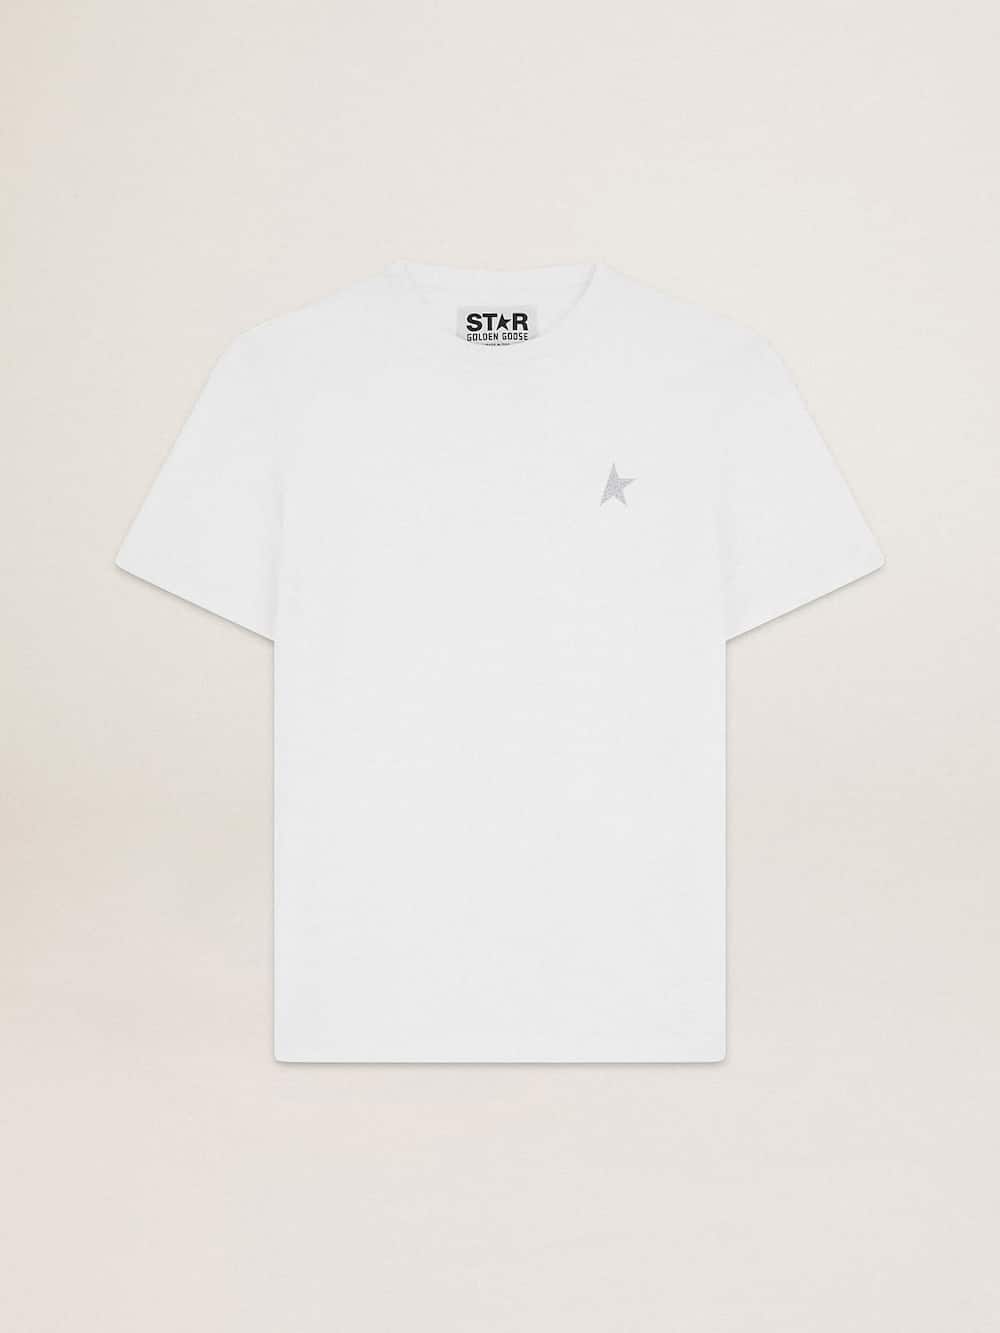 Golden Goose - T-shirt homme blanc avec étoile à paillettes argentées sur le devant in 